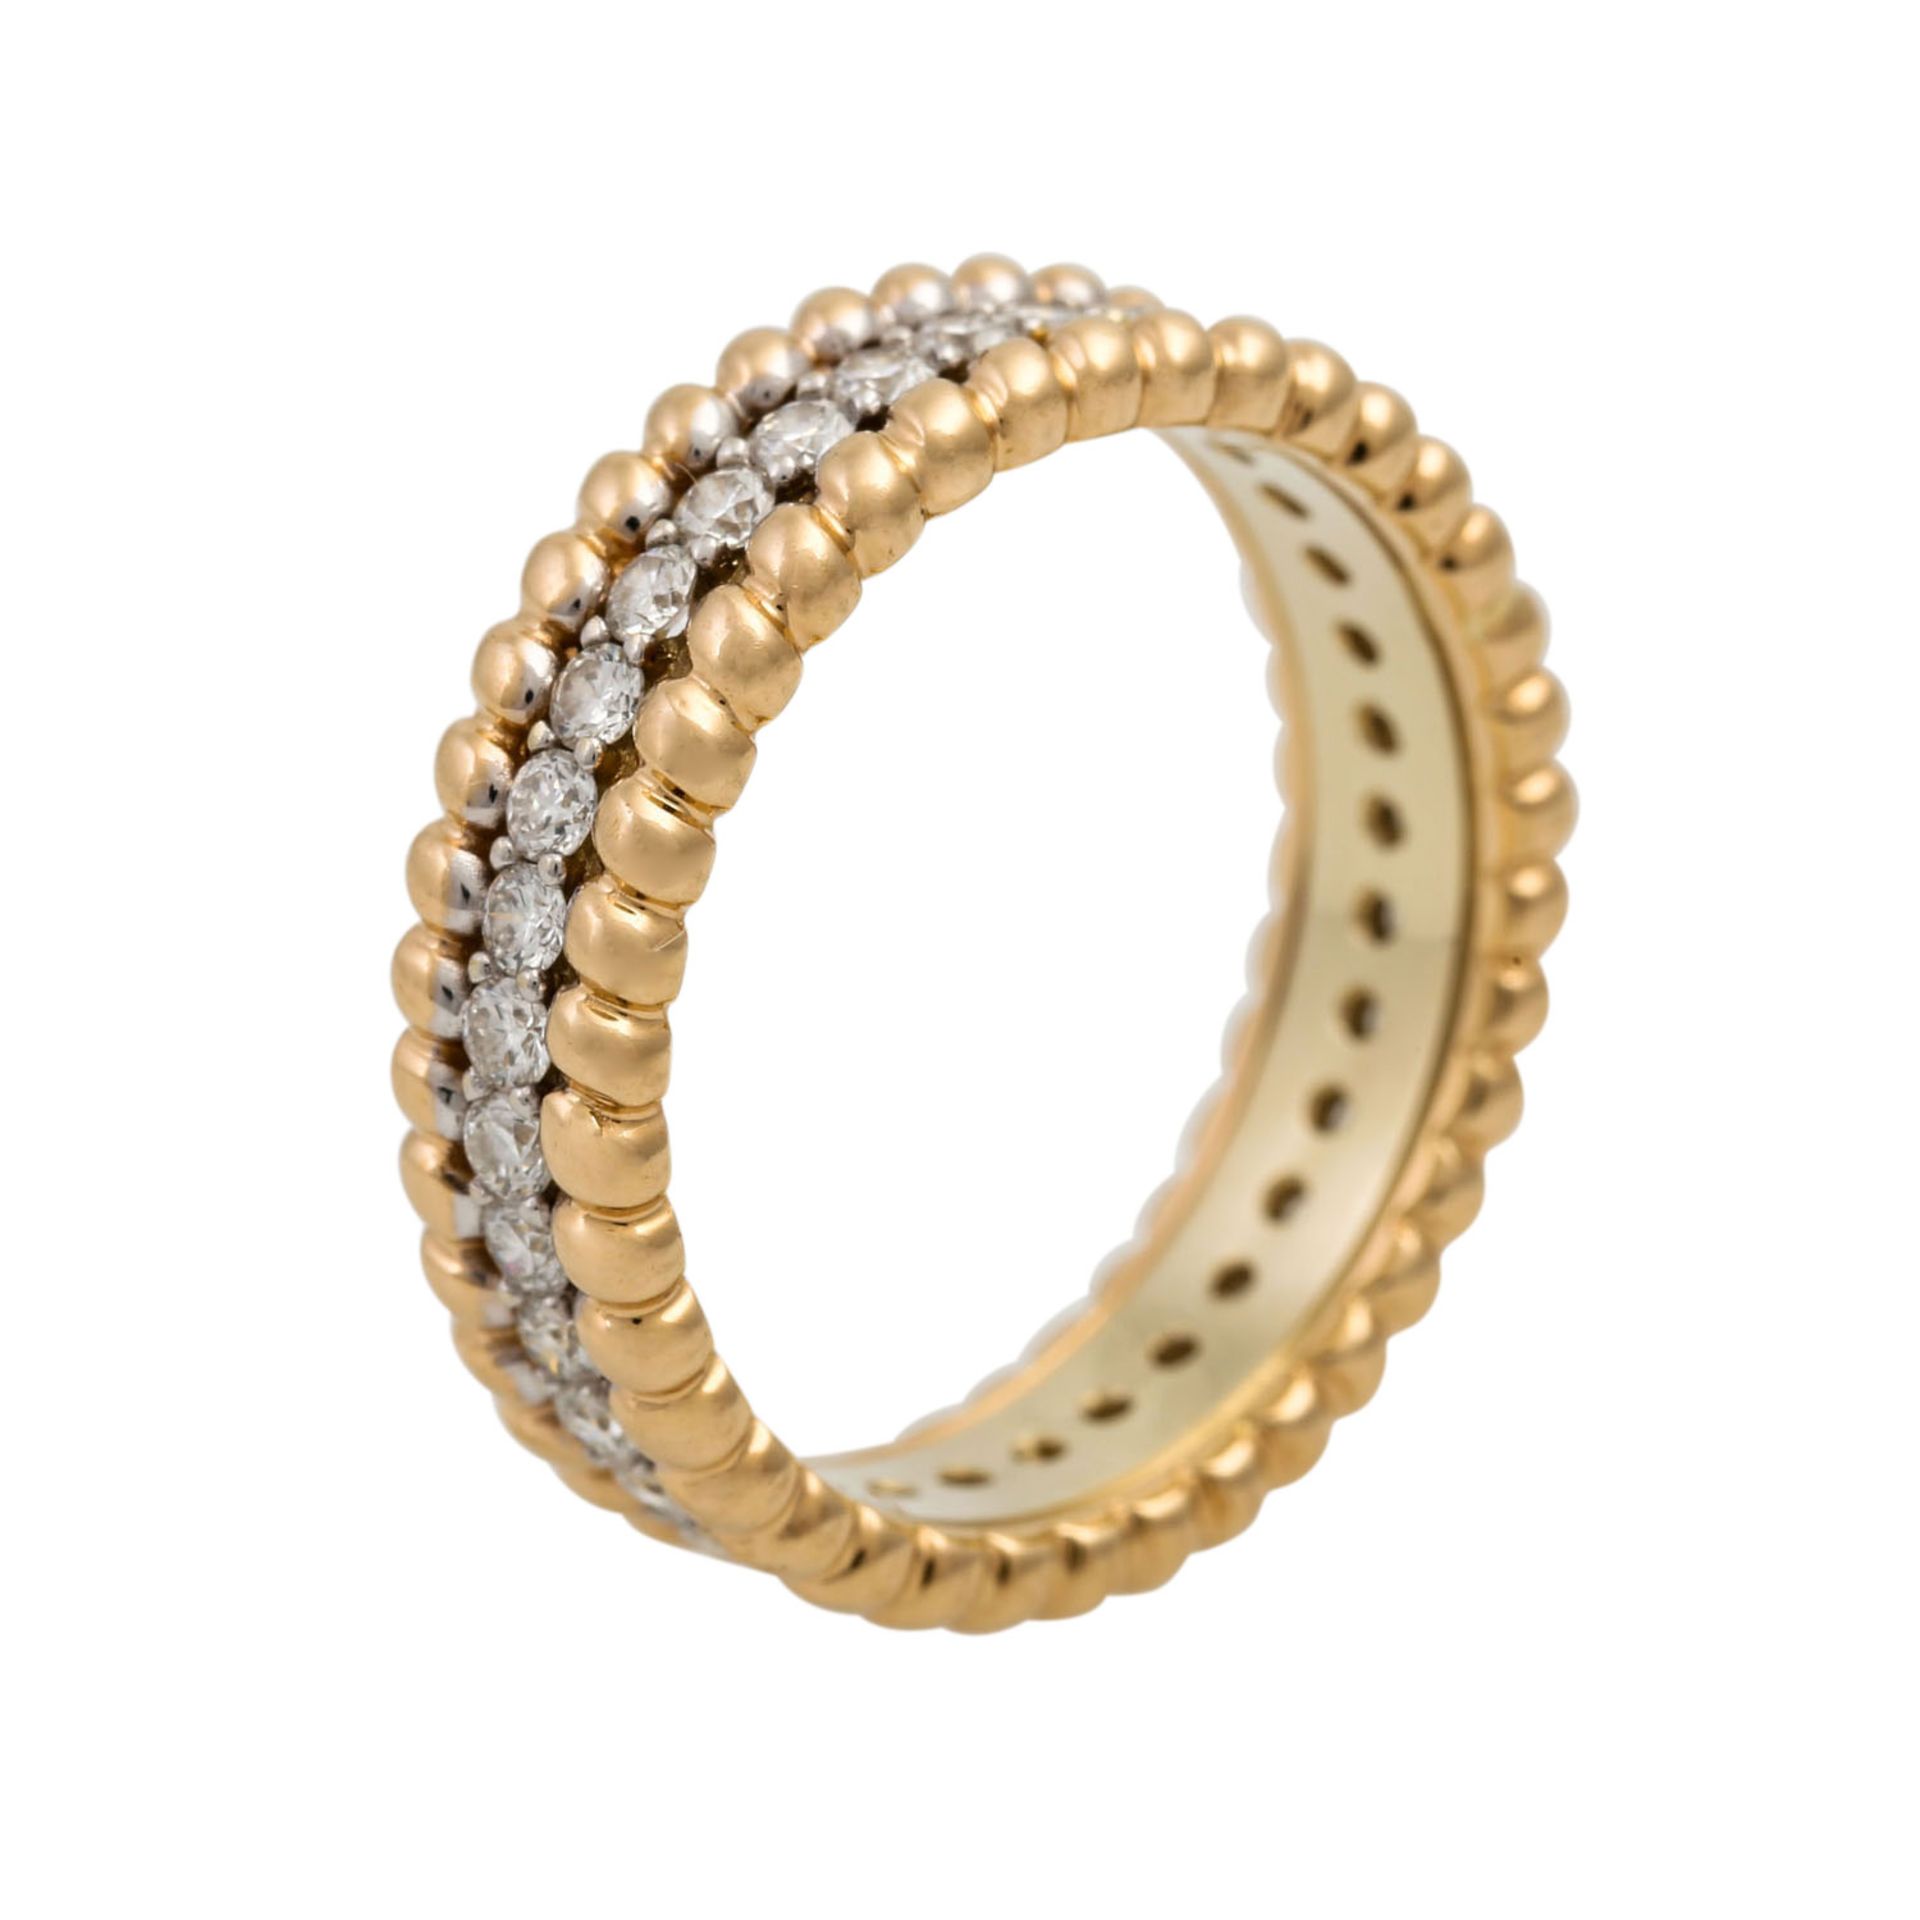 CHRIST Ring mit Brillanten zus. ca. 0,35 ct, in guter Farbe und Reinheit. NP: 1.800 €. GG 14K, 4,5 - Bild 4 aus 4